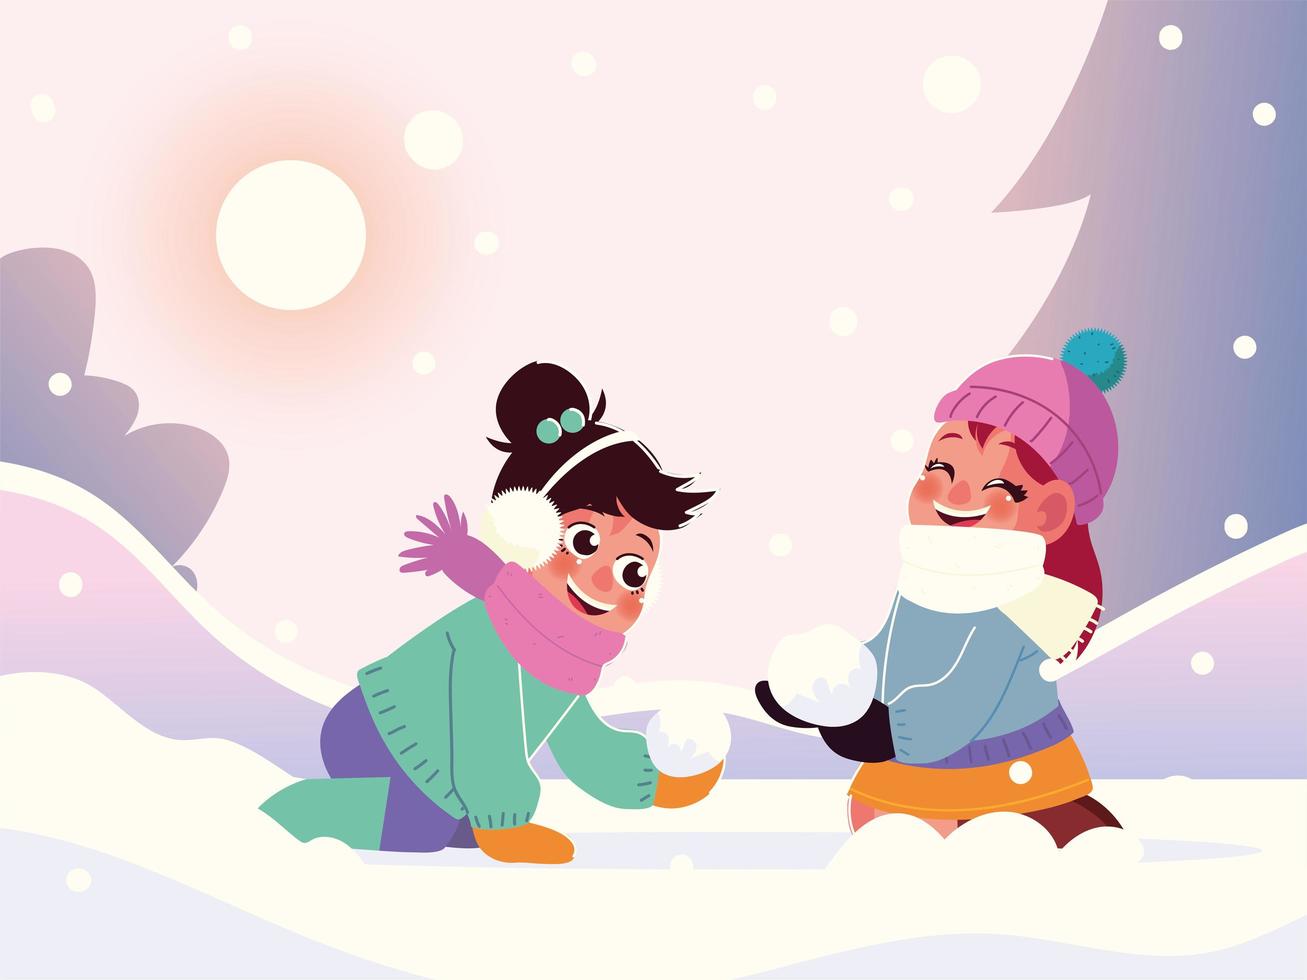 petites filles drôles avec des vêtements chauds jouant dans la neige, scène d'hiver vecteur